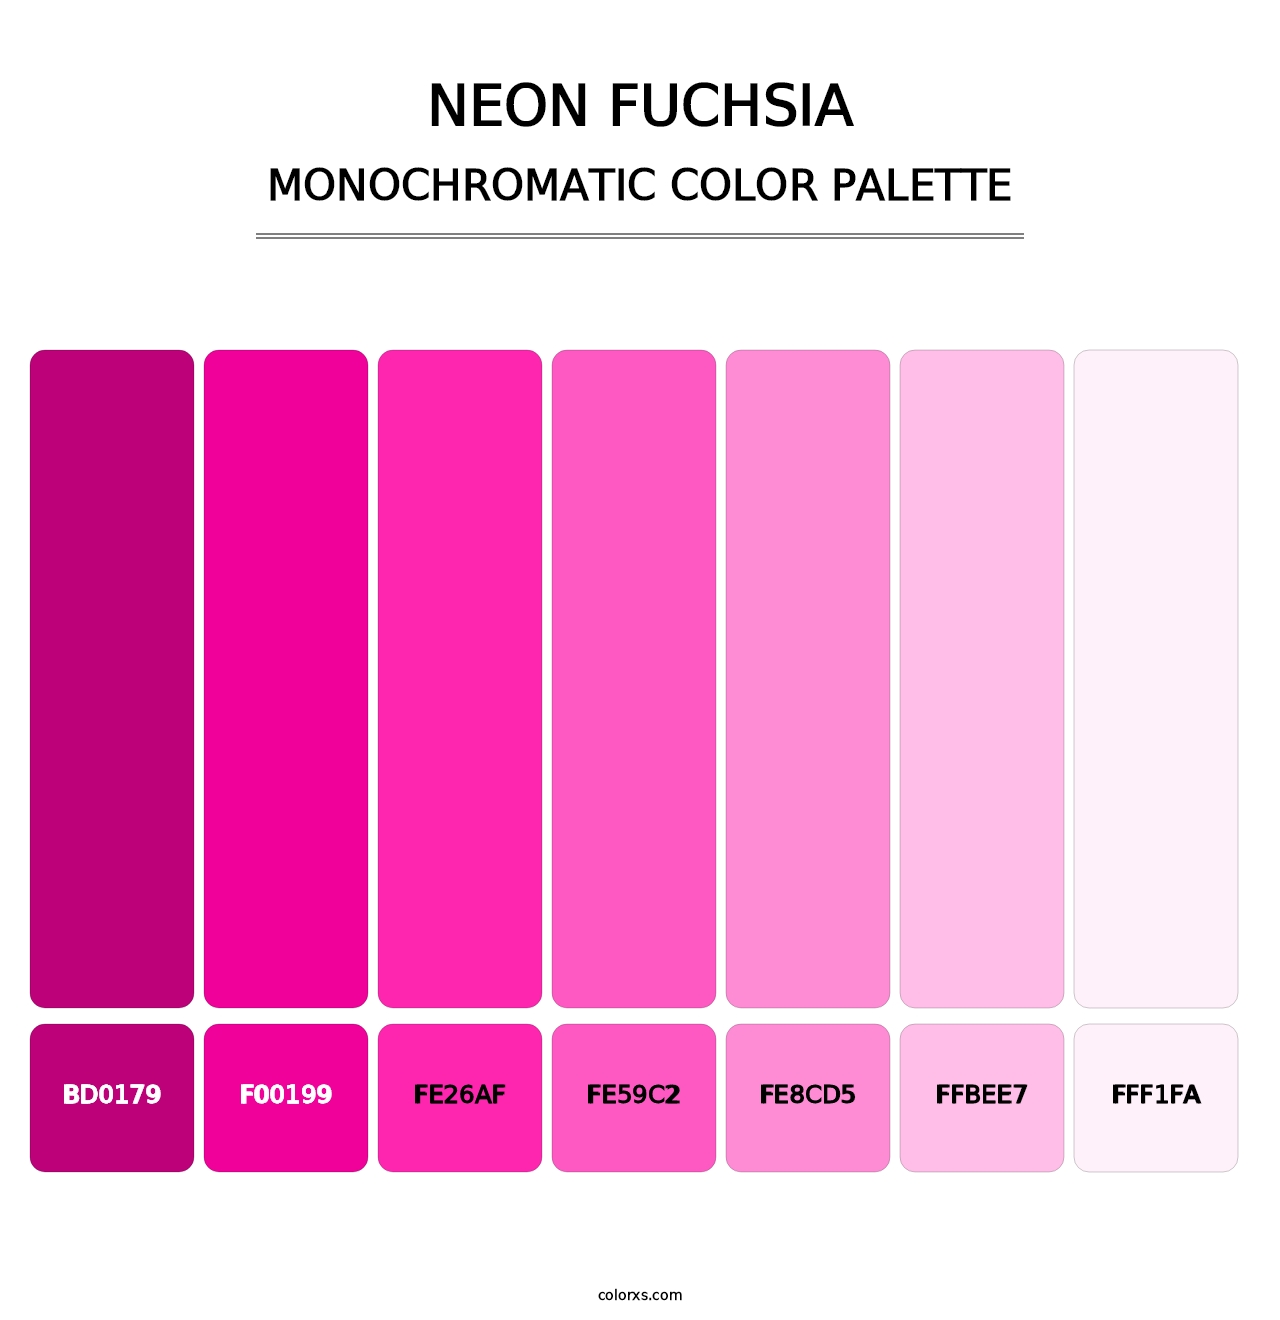 Neon Fuchsia - Monochromatic Color Palette